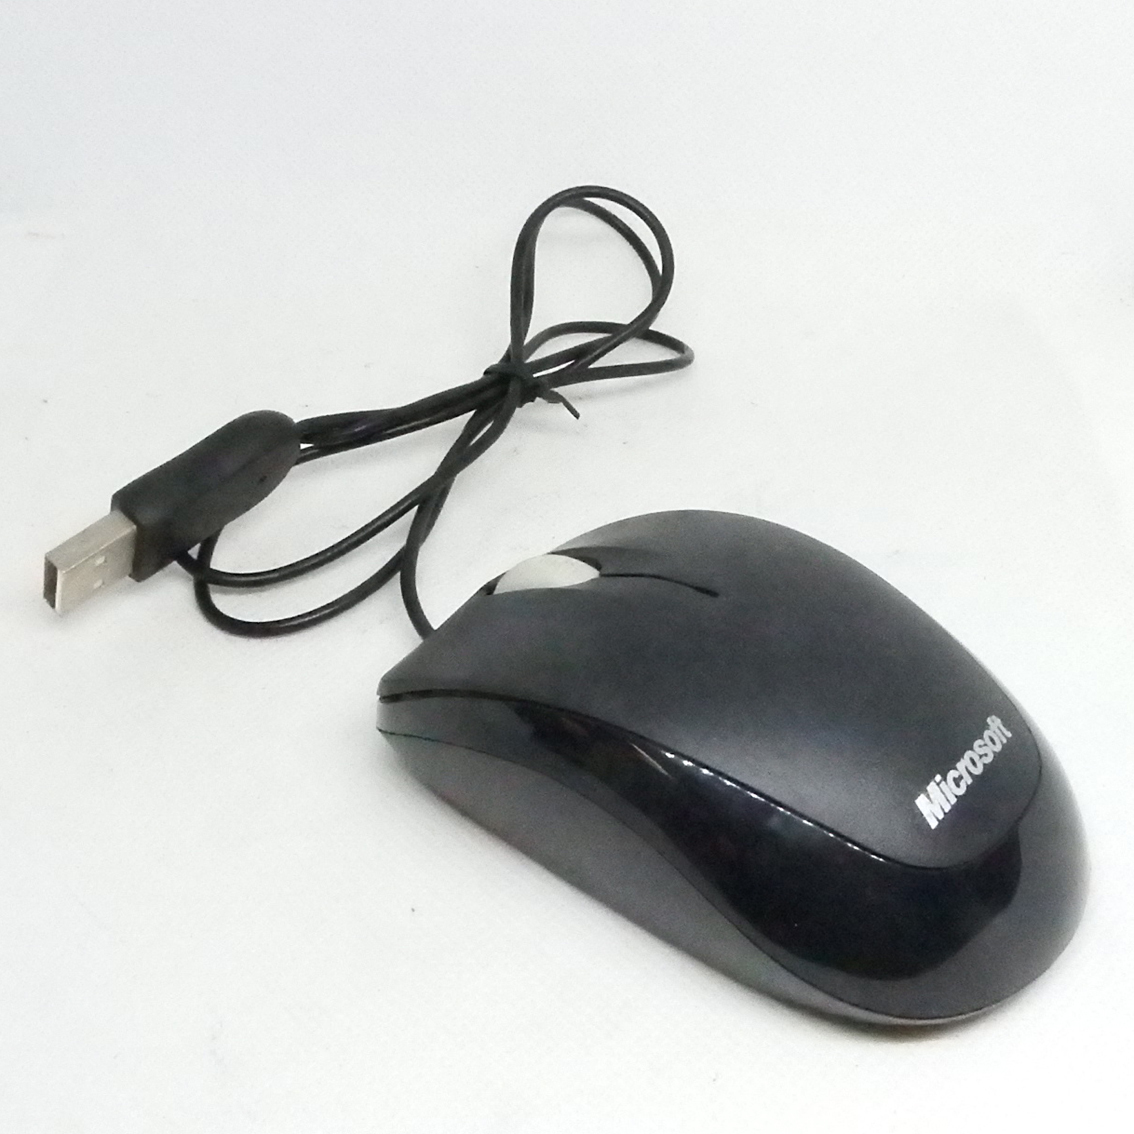 FU0402 マイクロソフト USBマウス の画像1